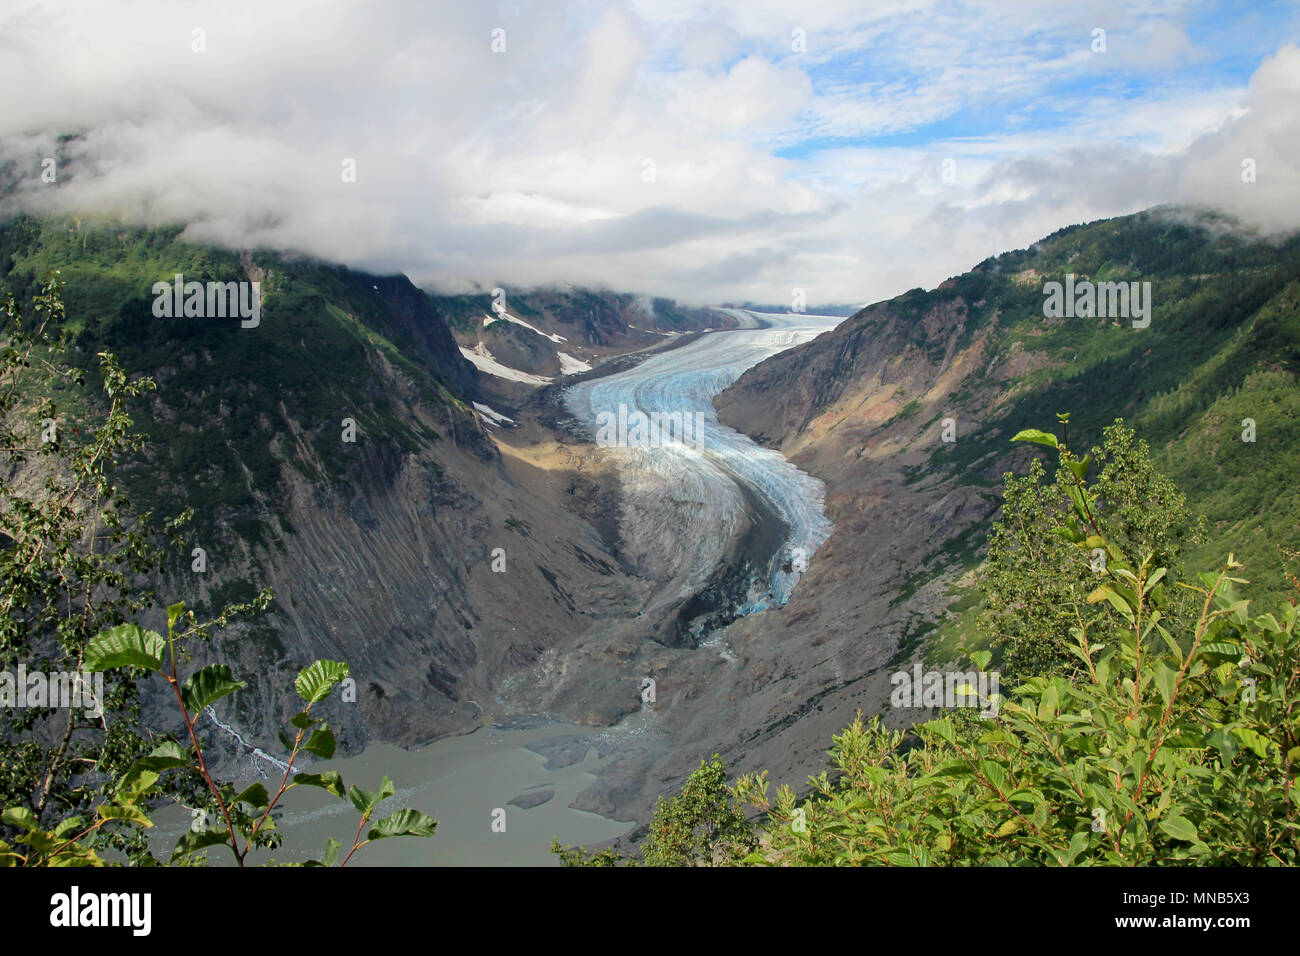 Il ghiacciaio di salmone vicino Hyder, Alaska e Stewart, Canada, il ghiacciaio è situato a destra sul lato canadese del booarder in British Columbia Foto Stock